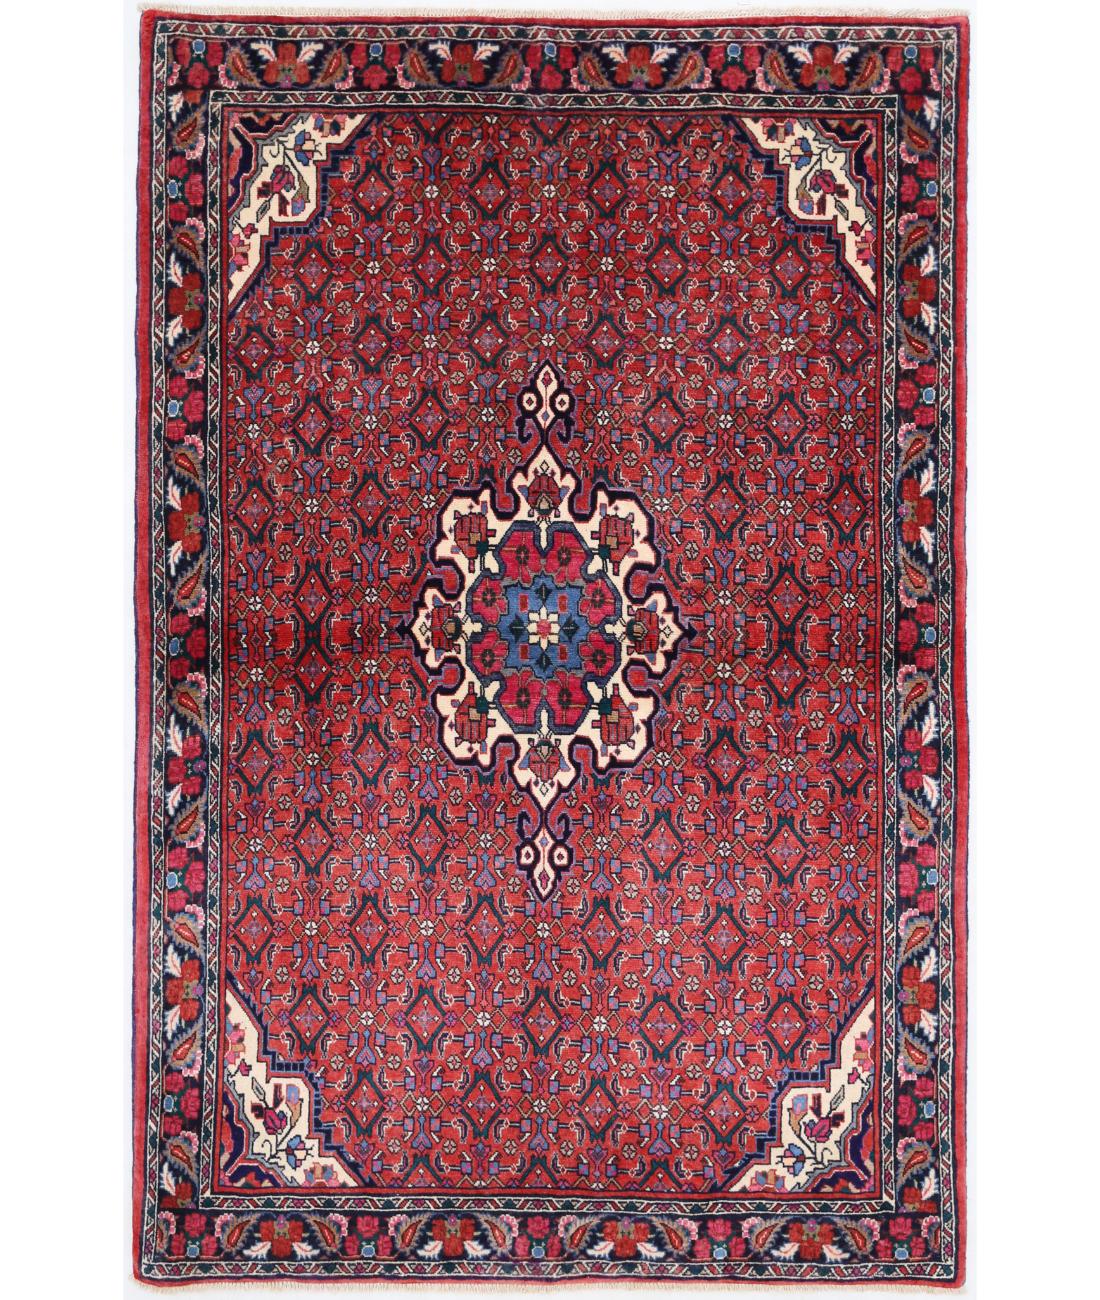 Hand Knotted Persian Bijar Wool Rug - 4'2'' x 6'5'' 4' 2" X 6' 5" ( 127 X 196 ) / Rust / Blue